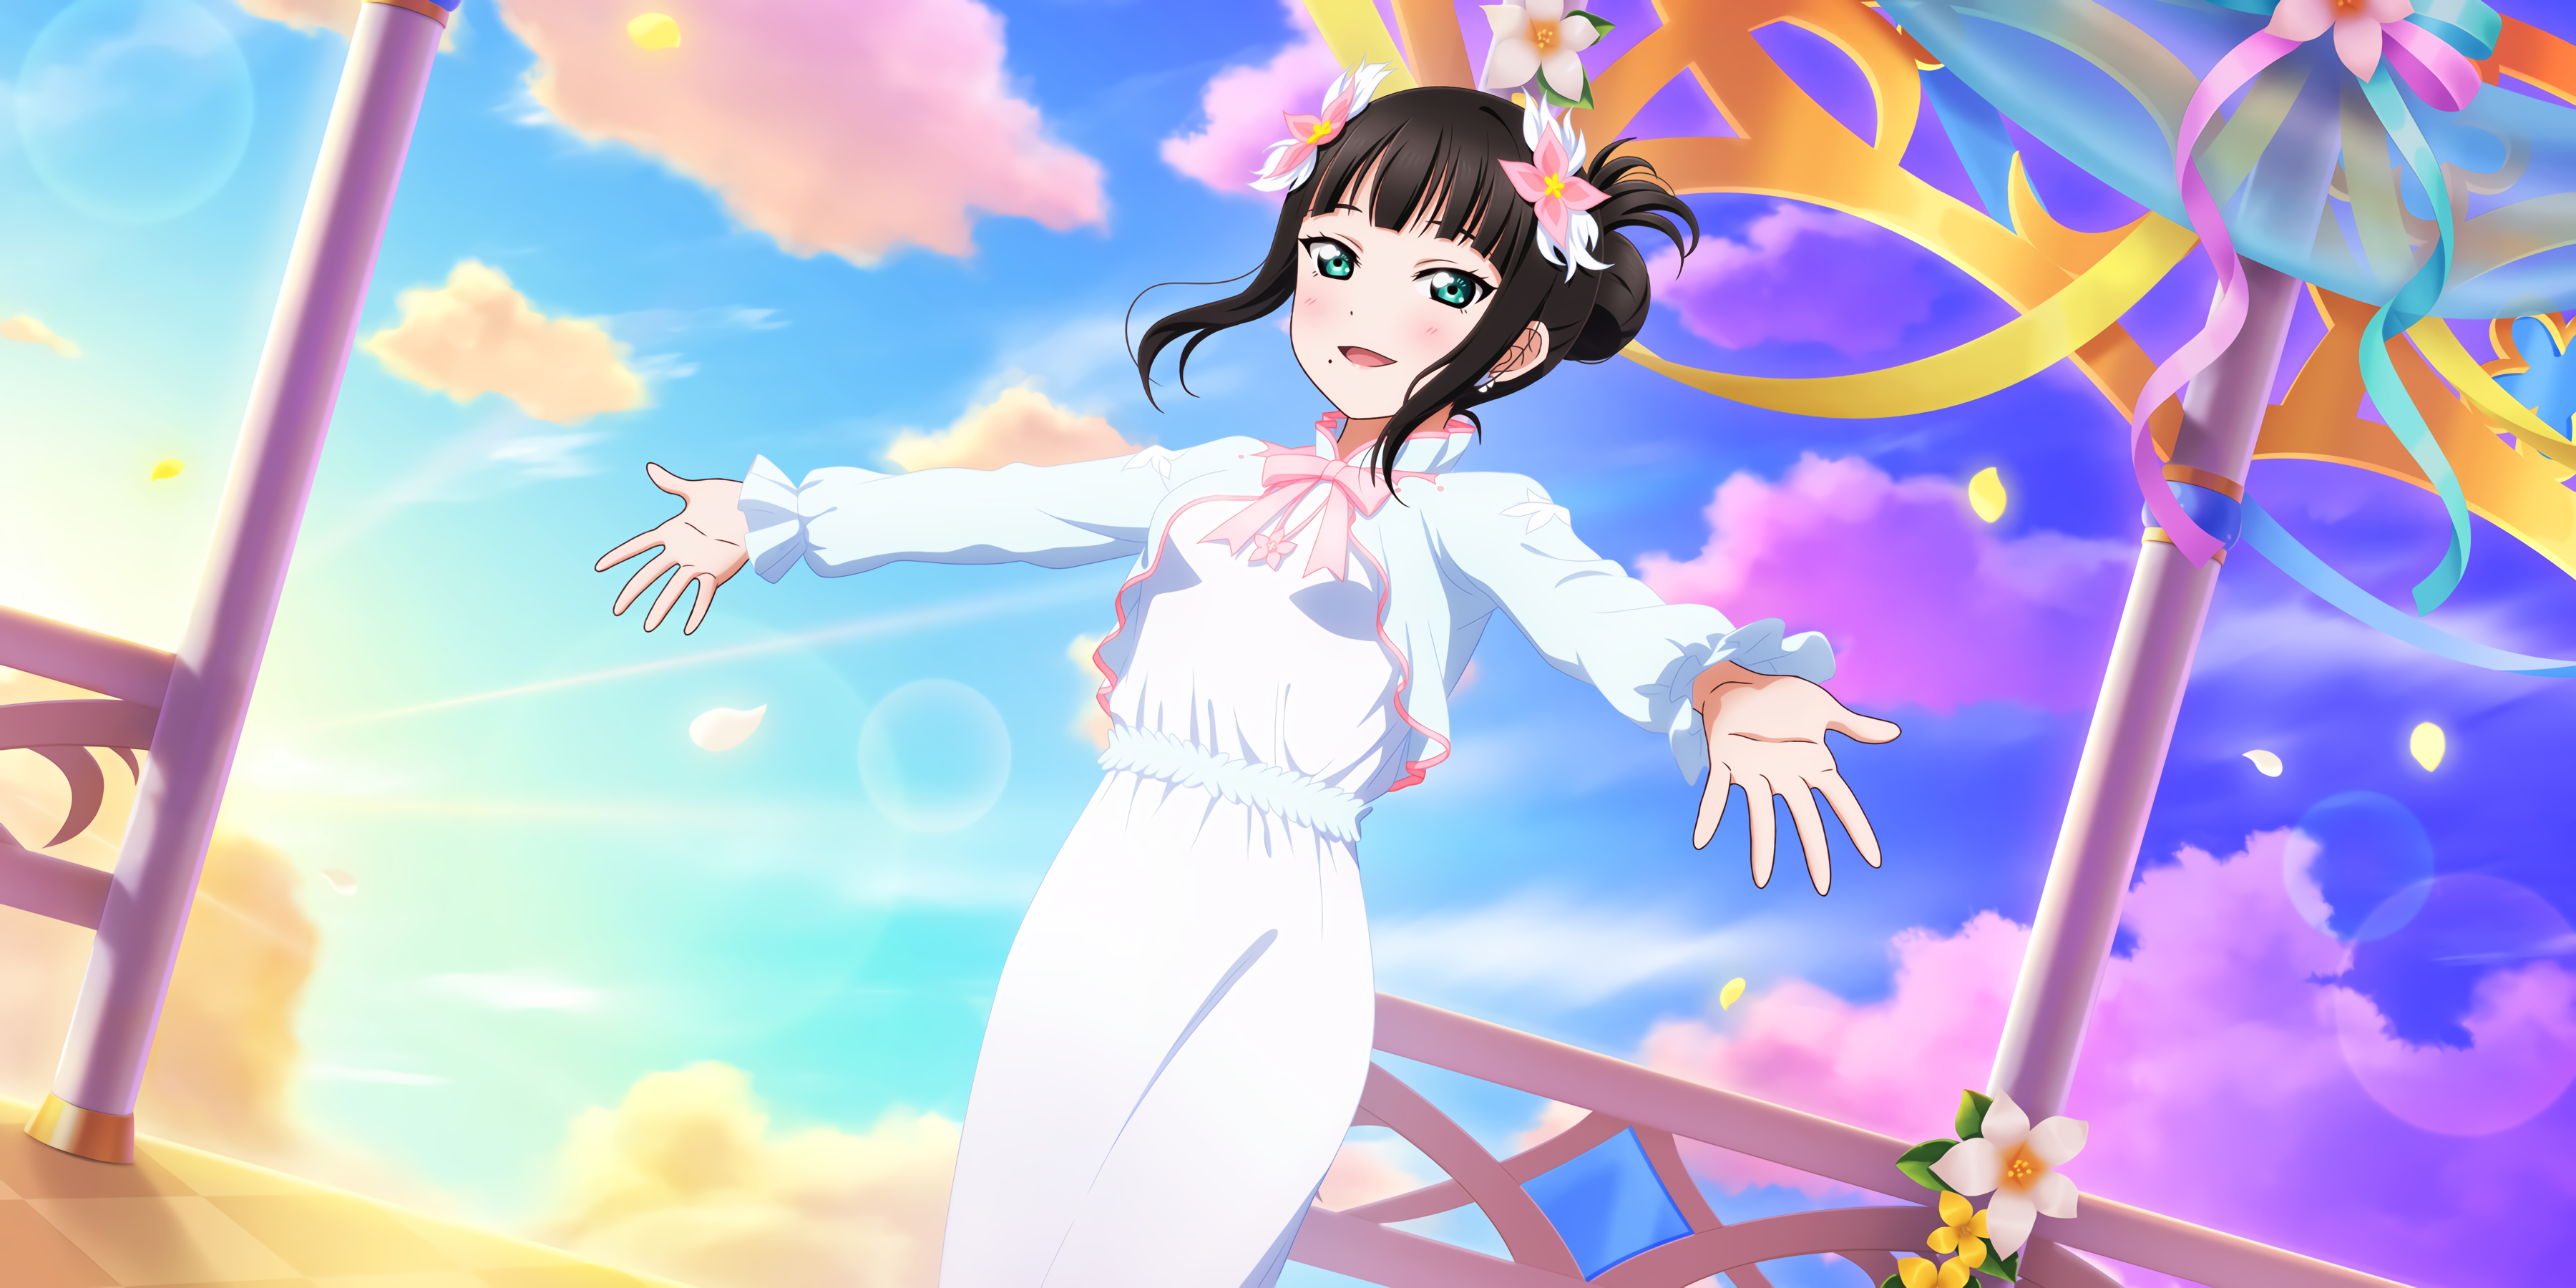 Kurosawa Dia Love Live Sunshine Anime Anime Girls Flower In Hair Clouds 3600x1800